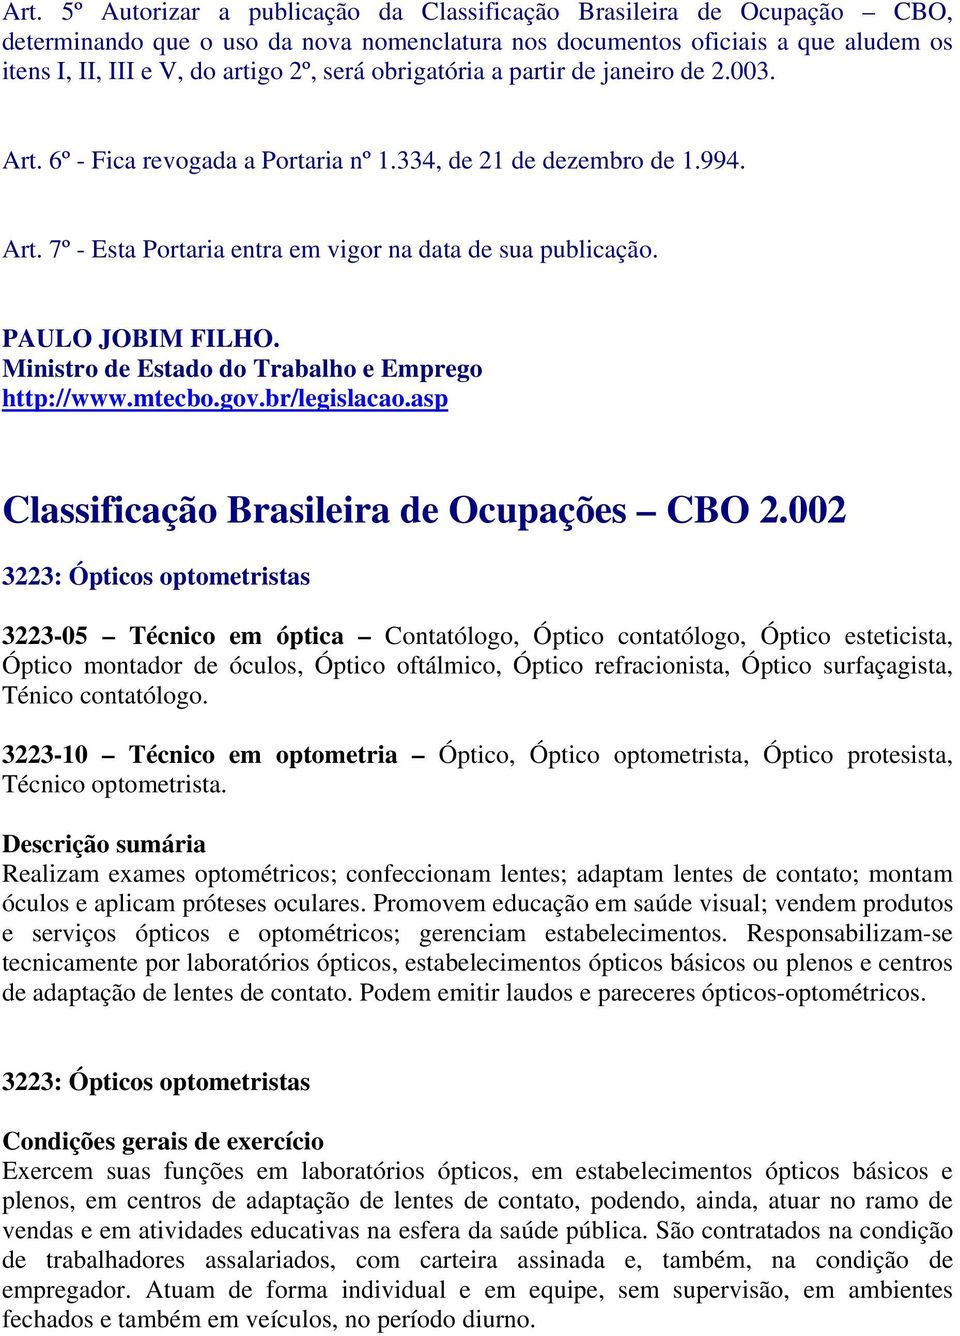 PAULO JOBIM FILHO. Ministro de Estado do Trabalho e Emprego http://www.mtecbo.gov.br/legislacao.asp Classificação Brasileira de Ocupações CBO 2.